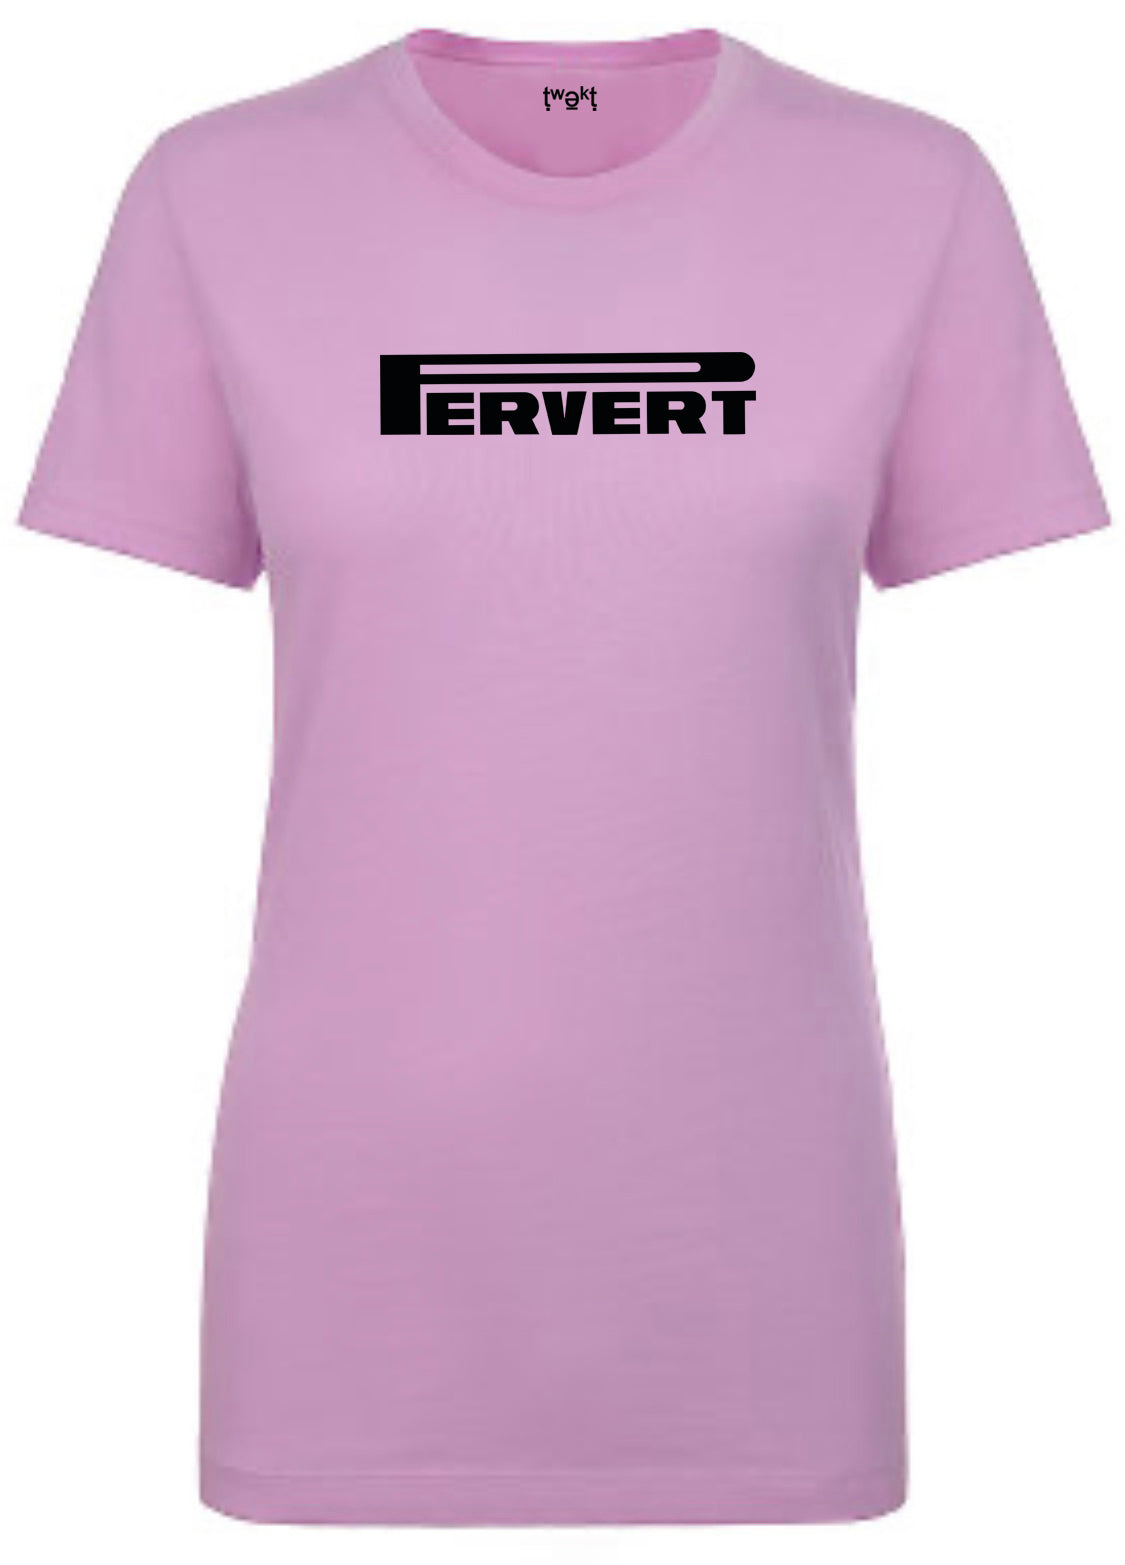 Pervert Women T-shirt